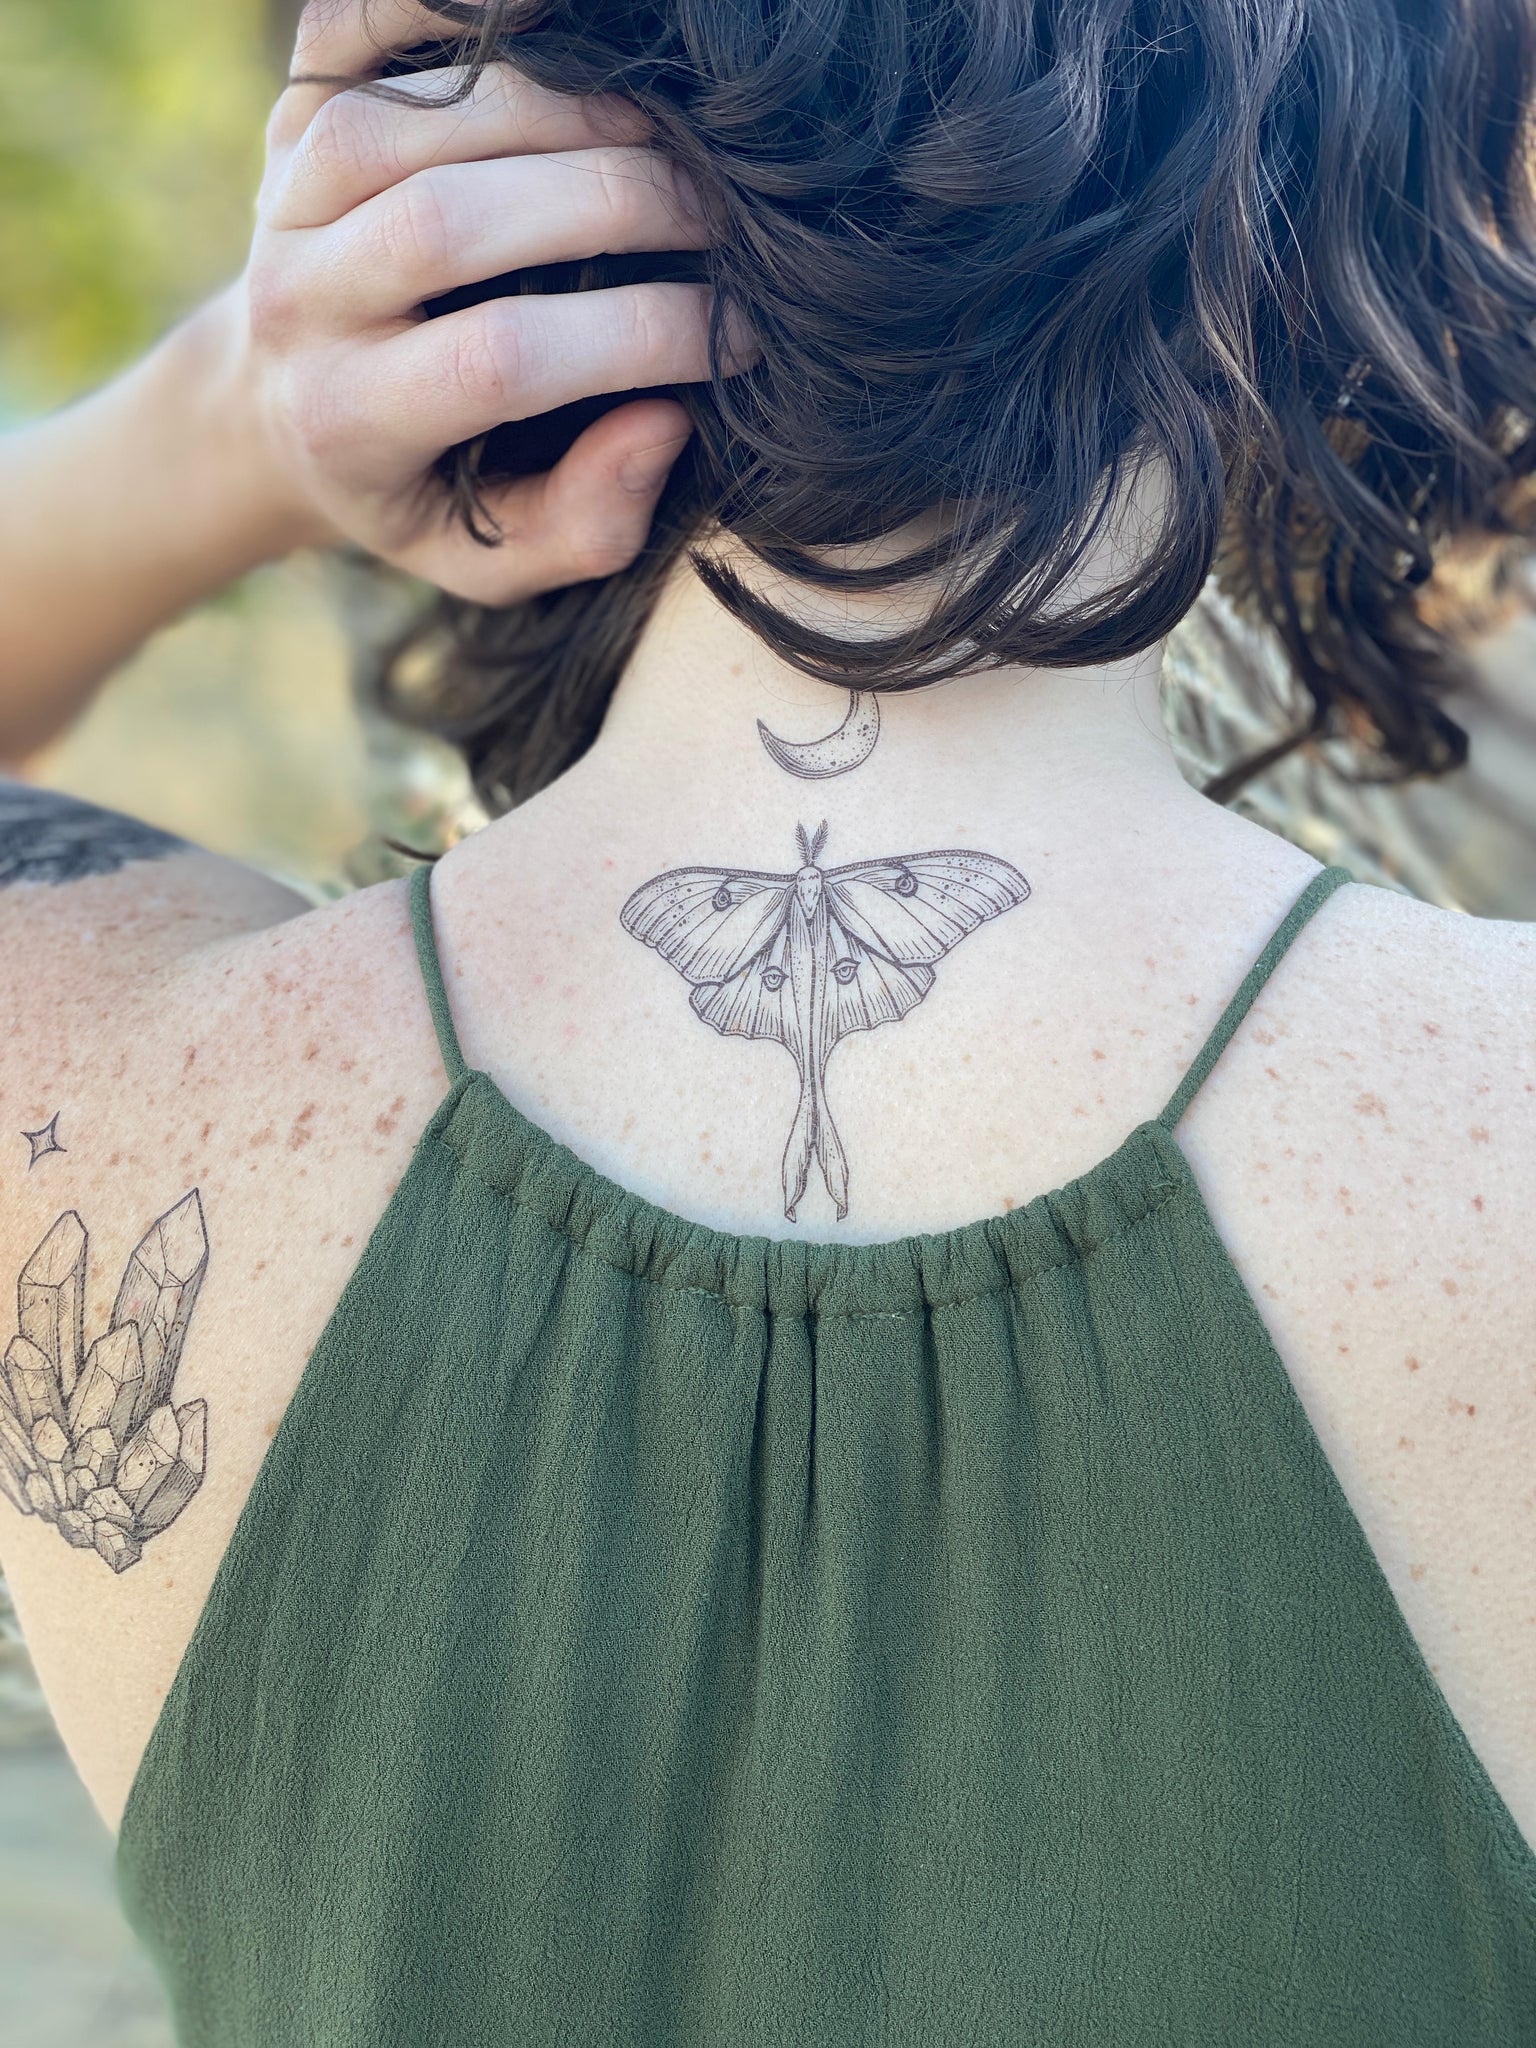 Stunning Moth Tattoo